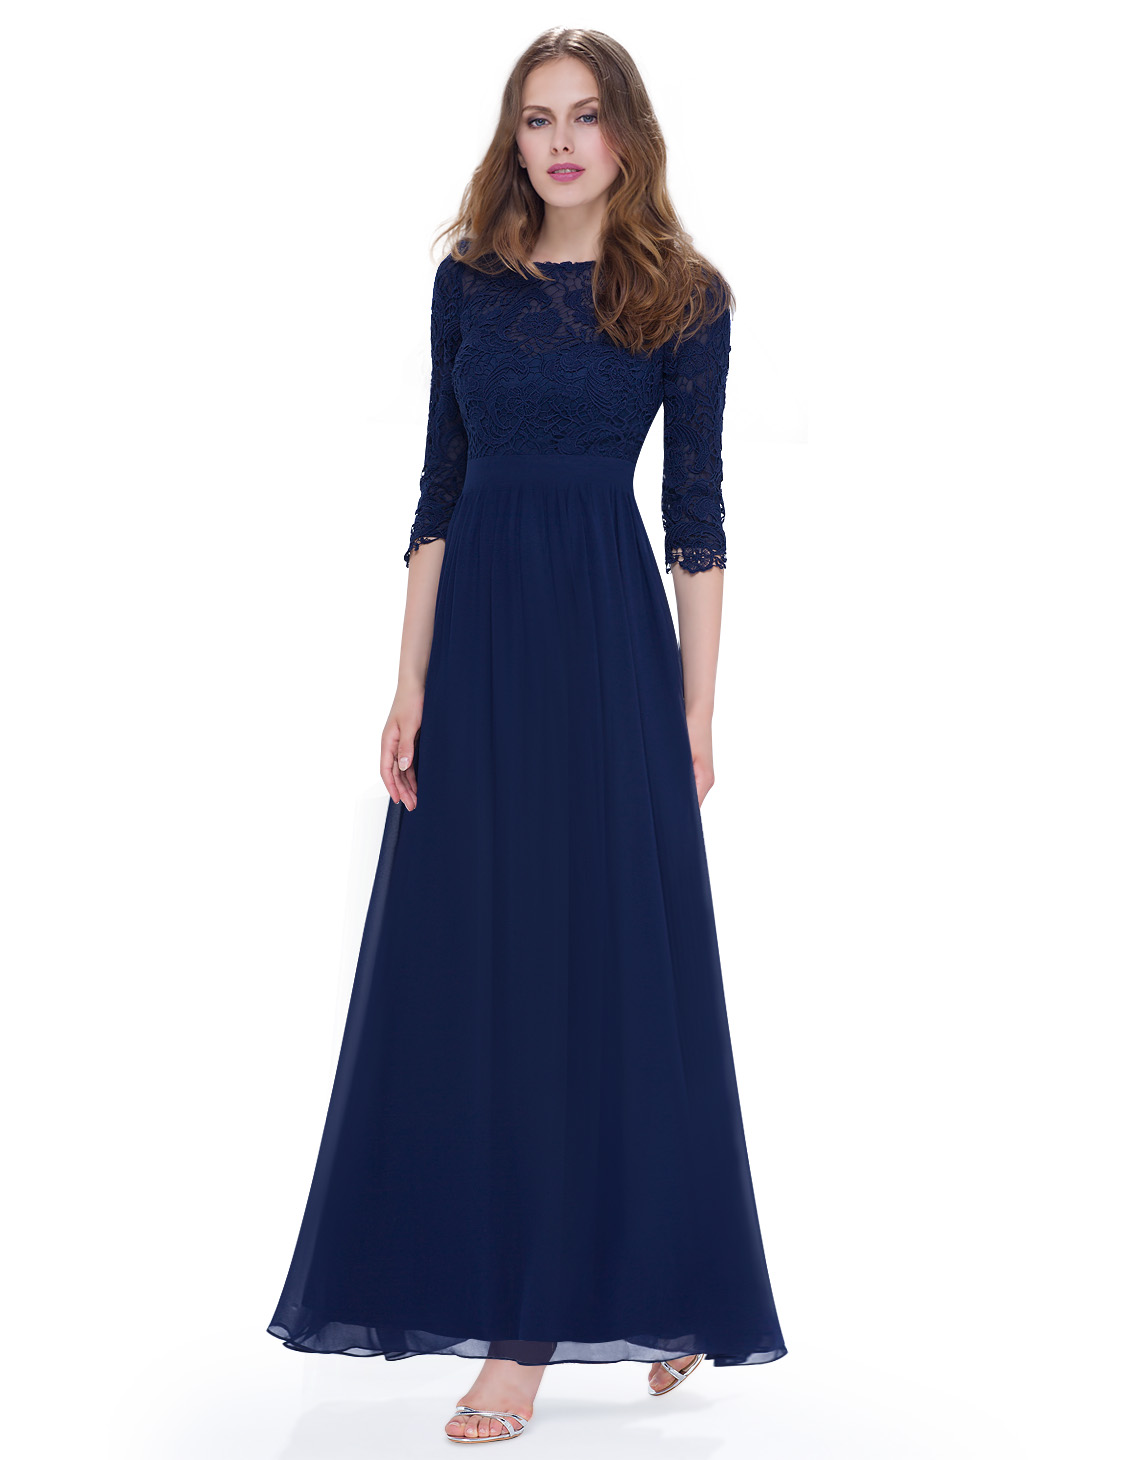 Dámské dlouhé společenské šaty LULA modrá (Dámské šaty)